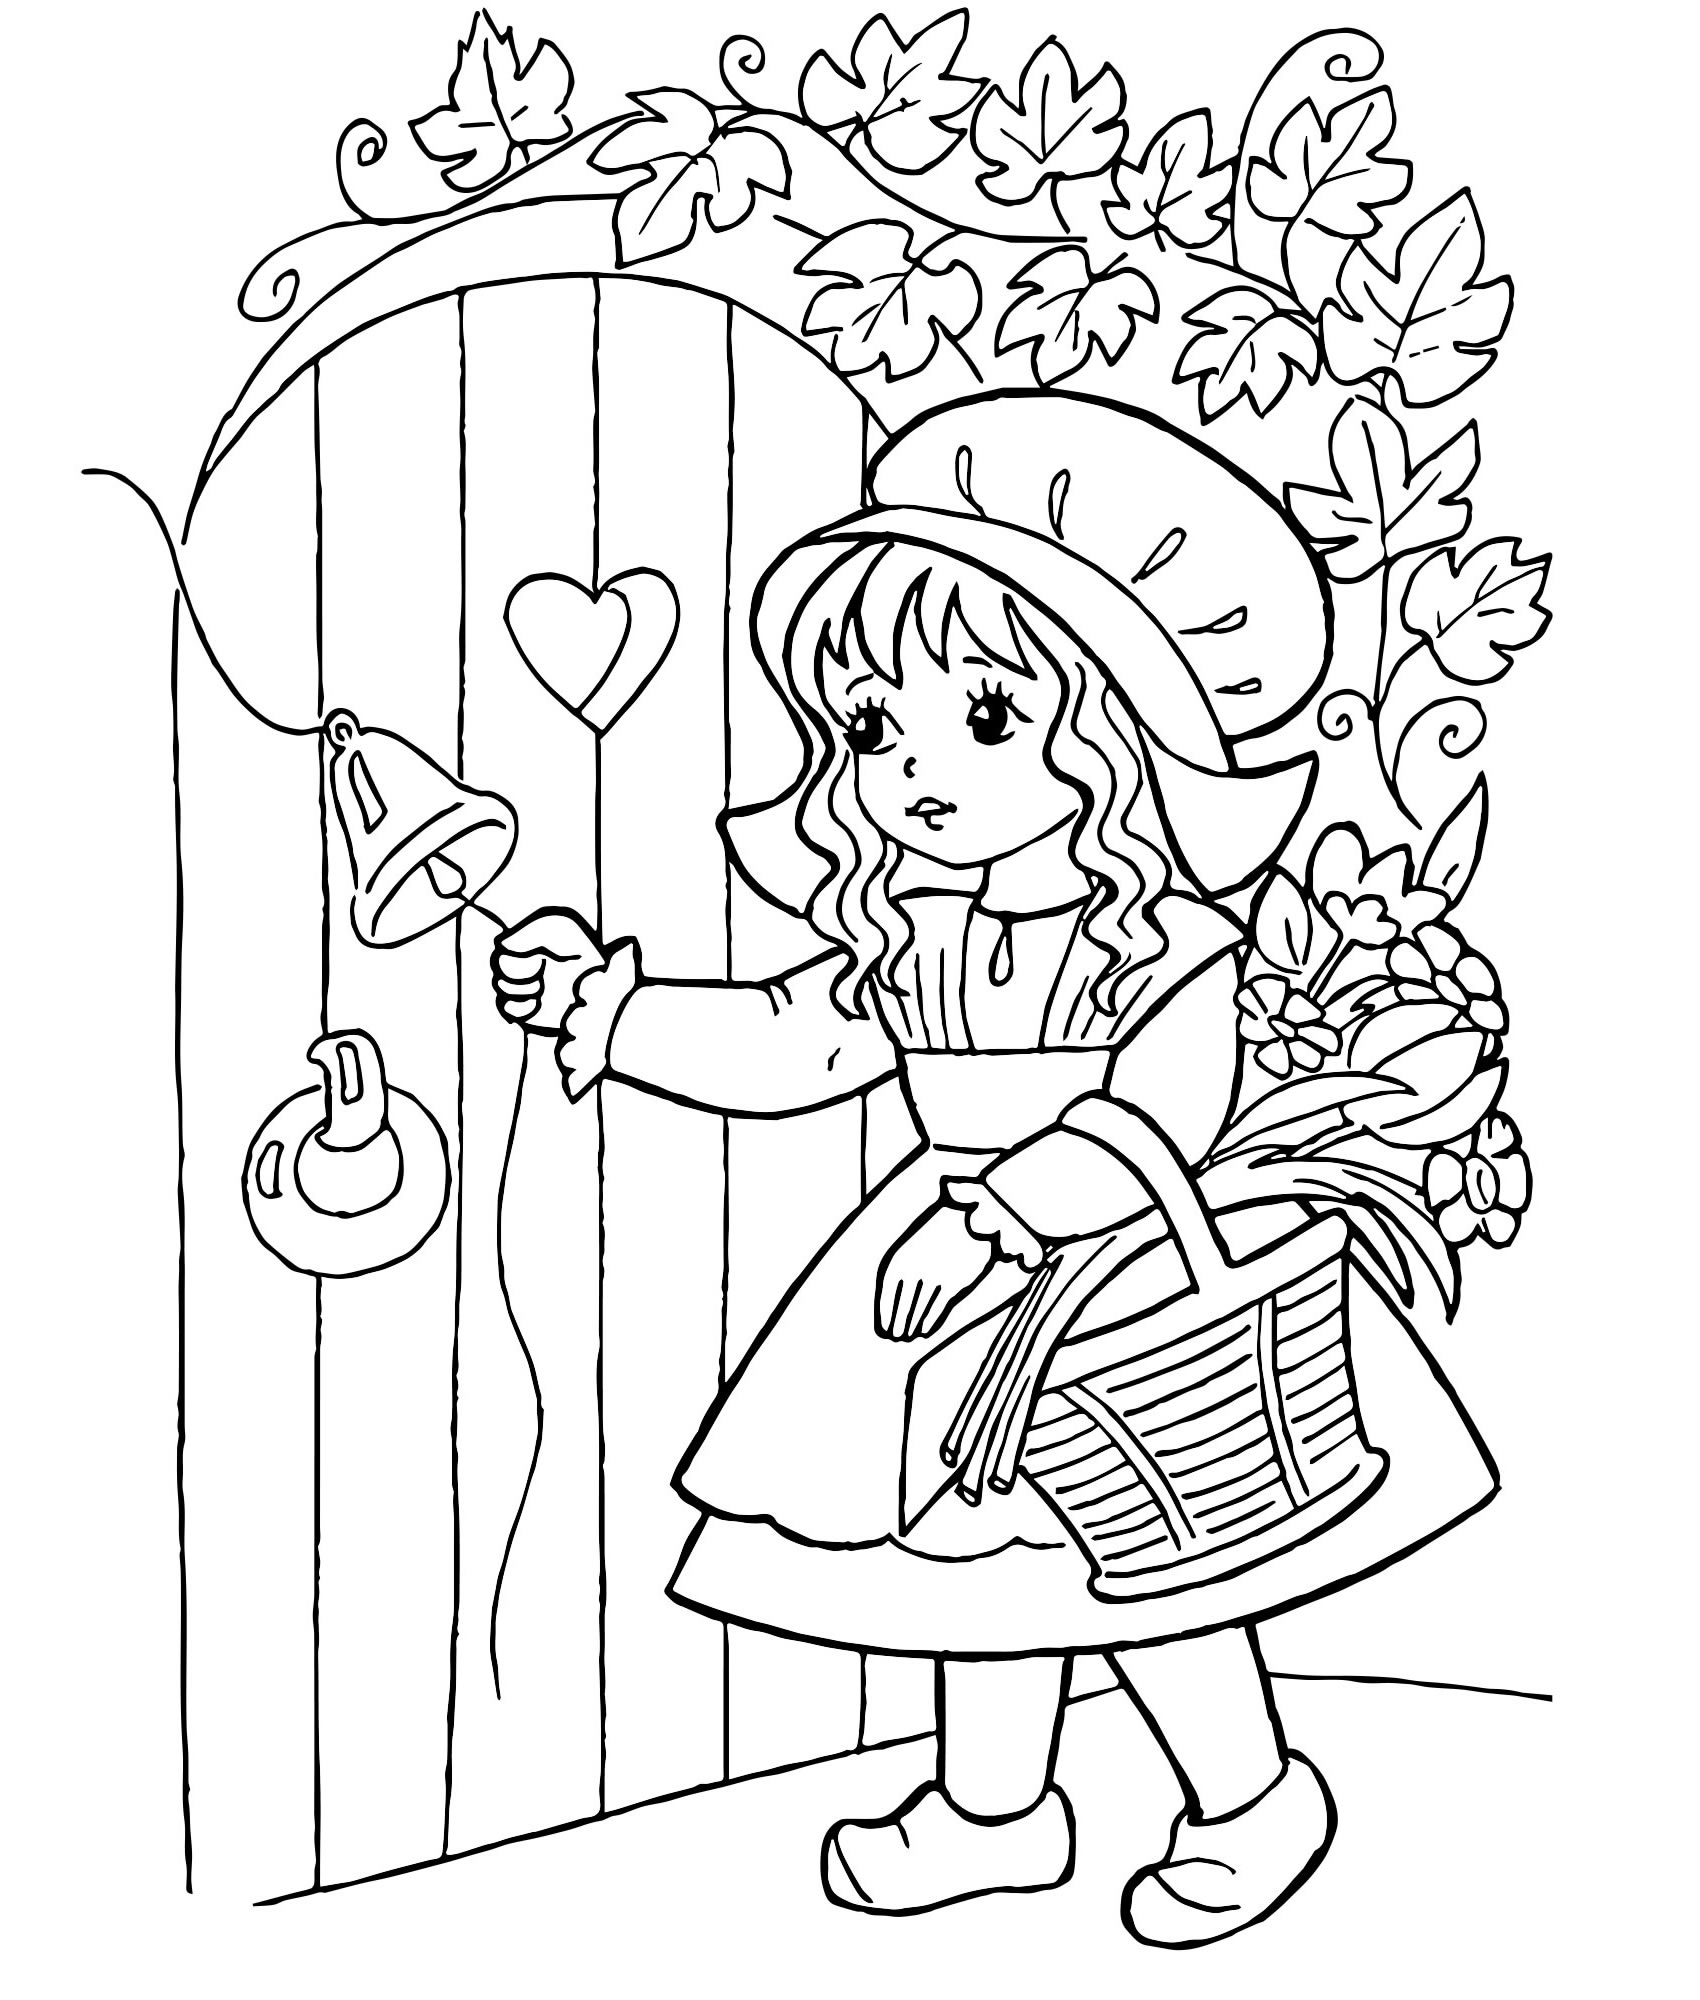 Красная Шапочка у двери — раскраска для детей. Распечатать бесплатно.